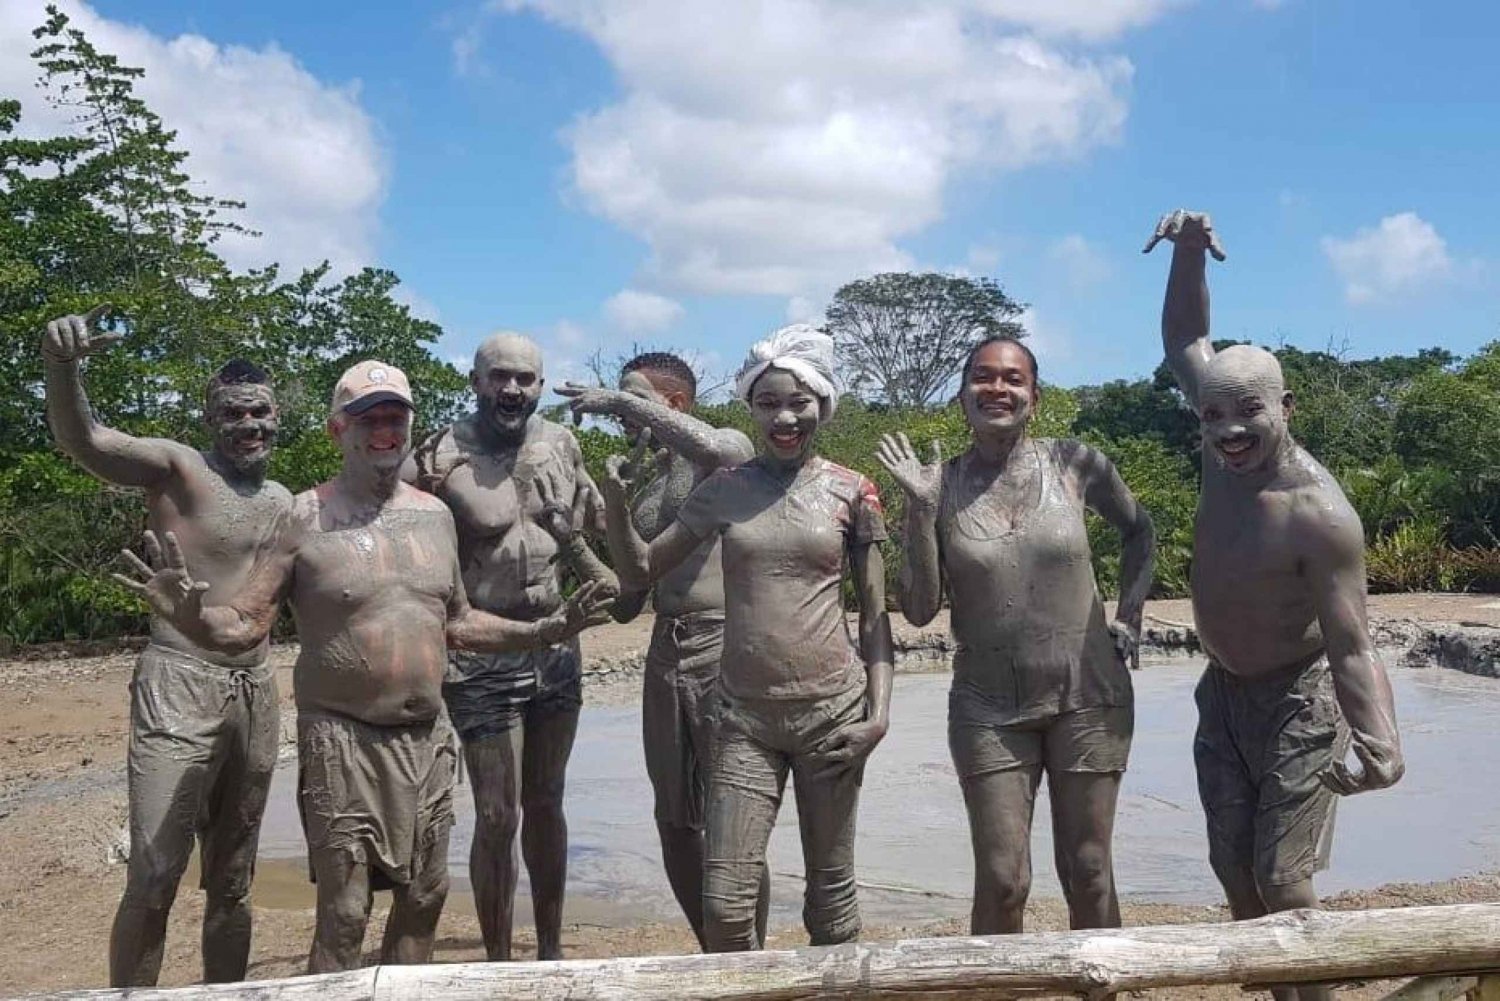 Trinidad: Mud Vulcano äventyr och matupplevelse!